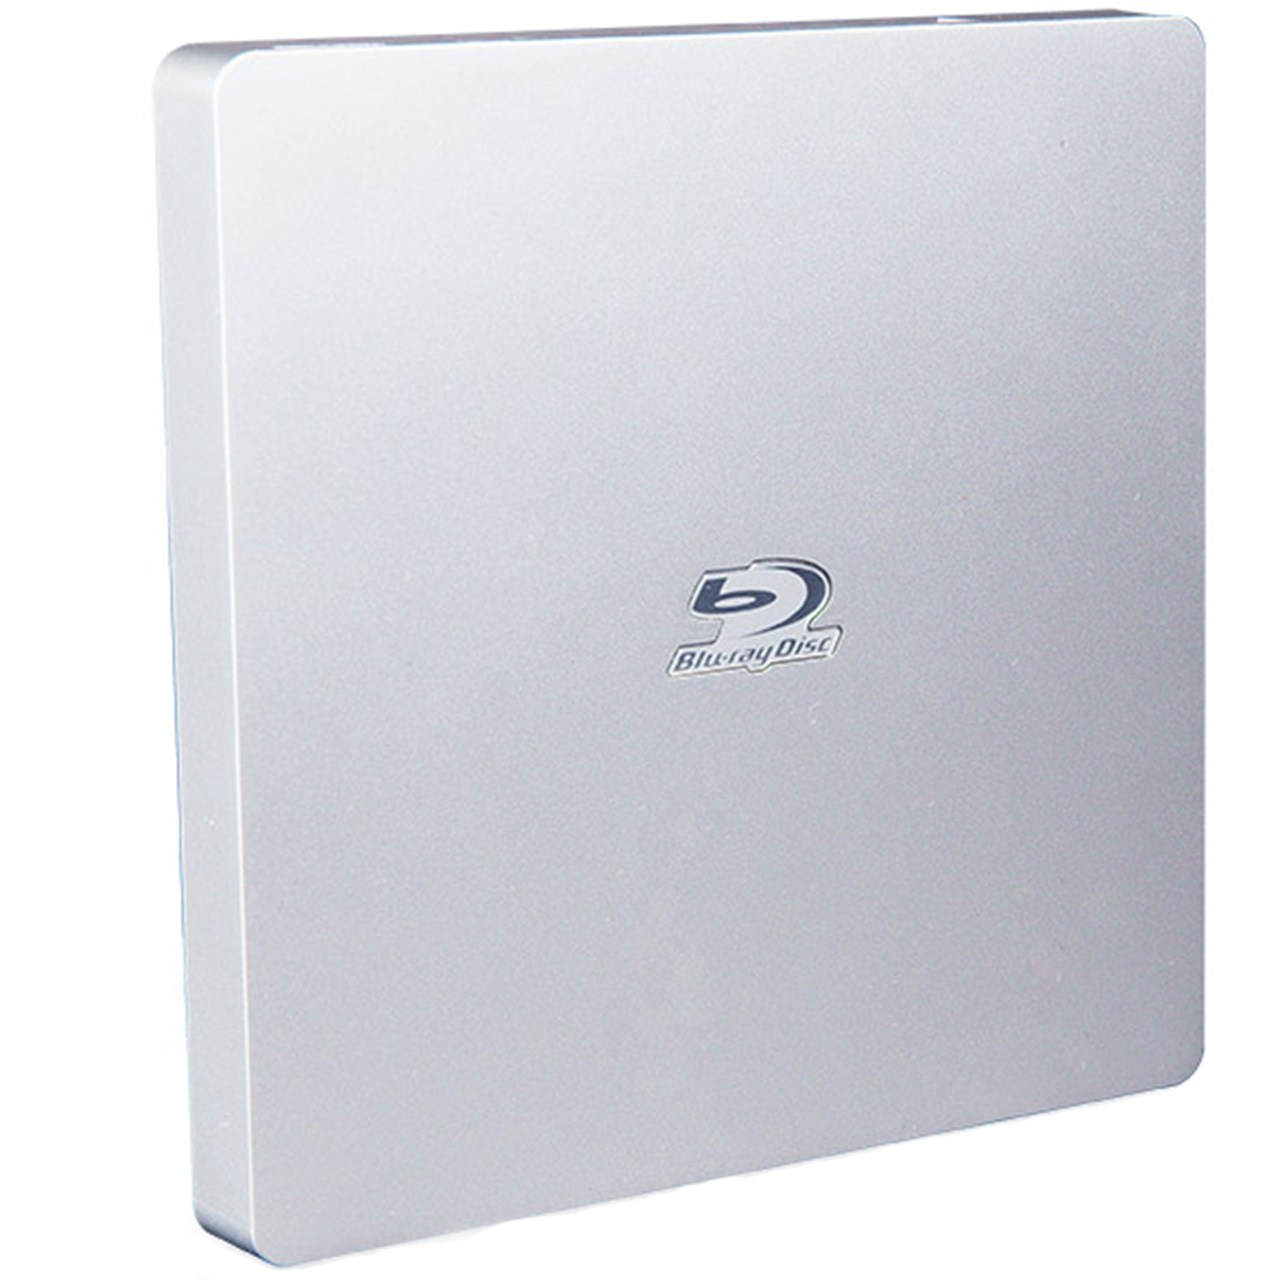 درایو Blu-ray اکسترنال پایونیر مدل BDR-XS06